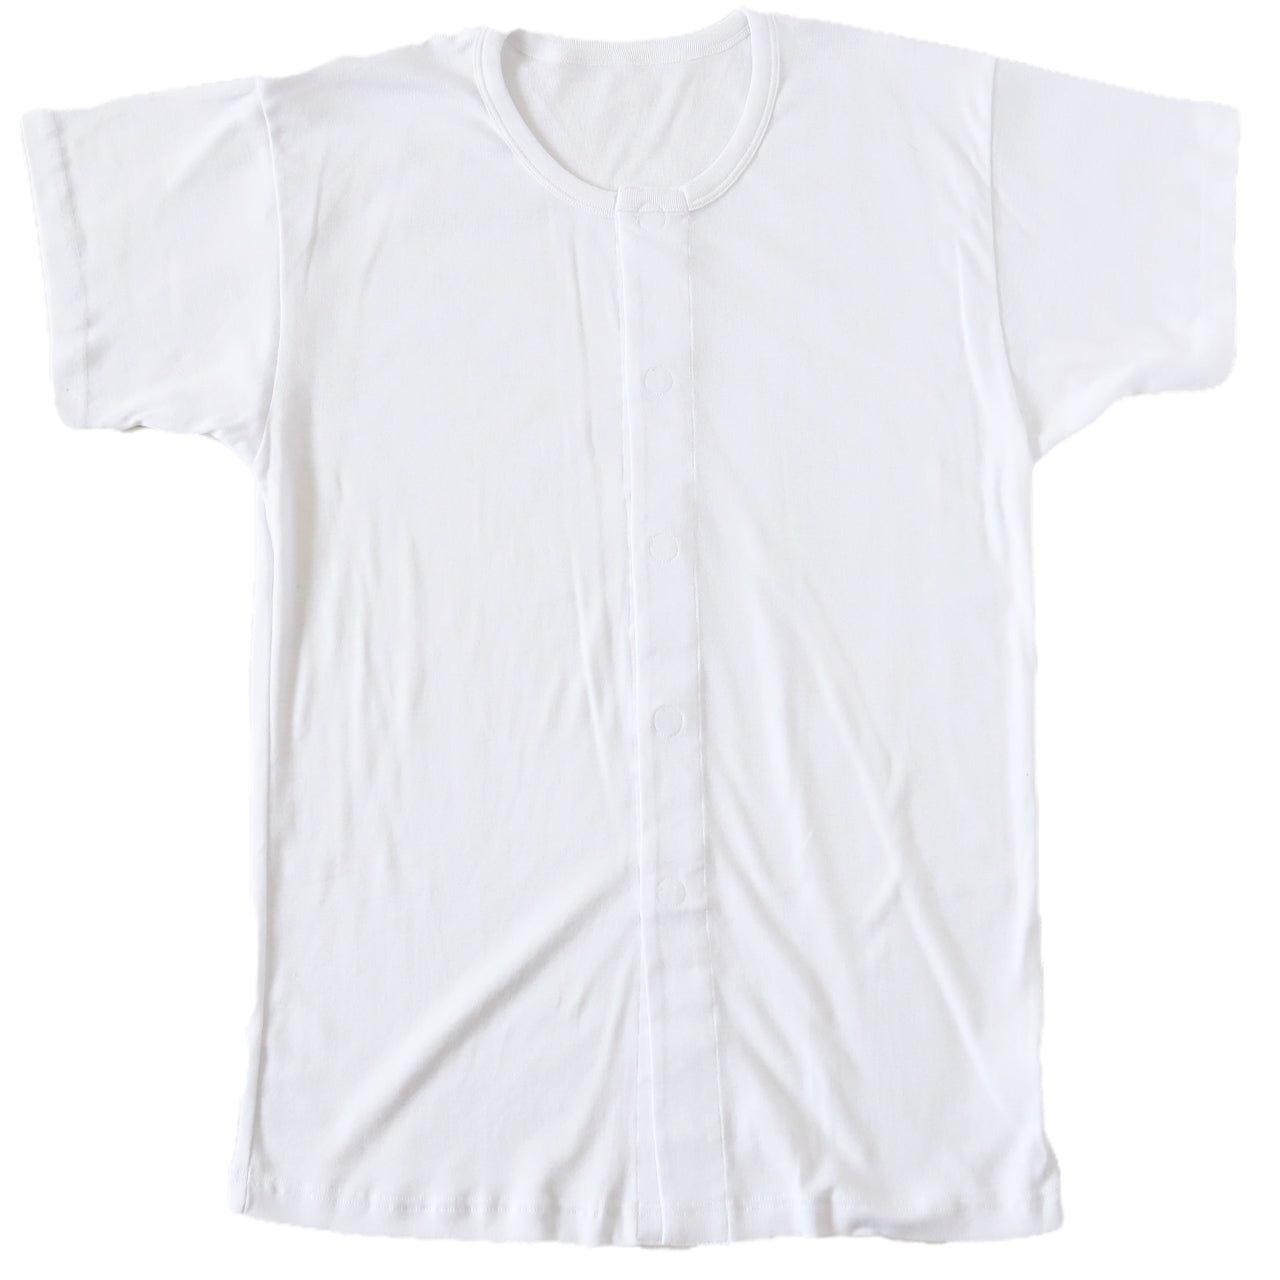 介護用 前開きシャツ メンズ 半袖 綿100% S～5L (マジックテープ